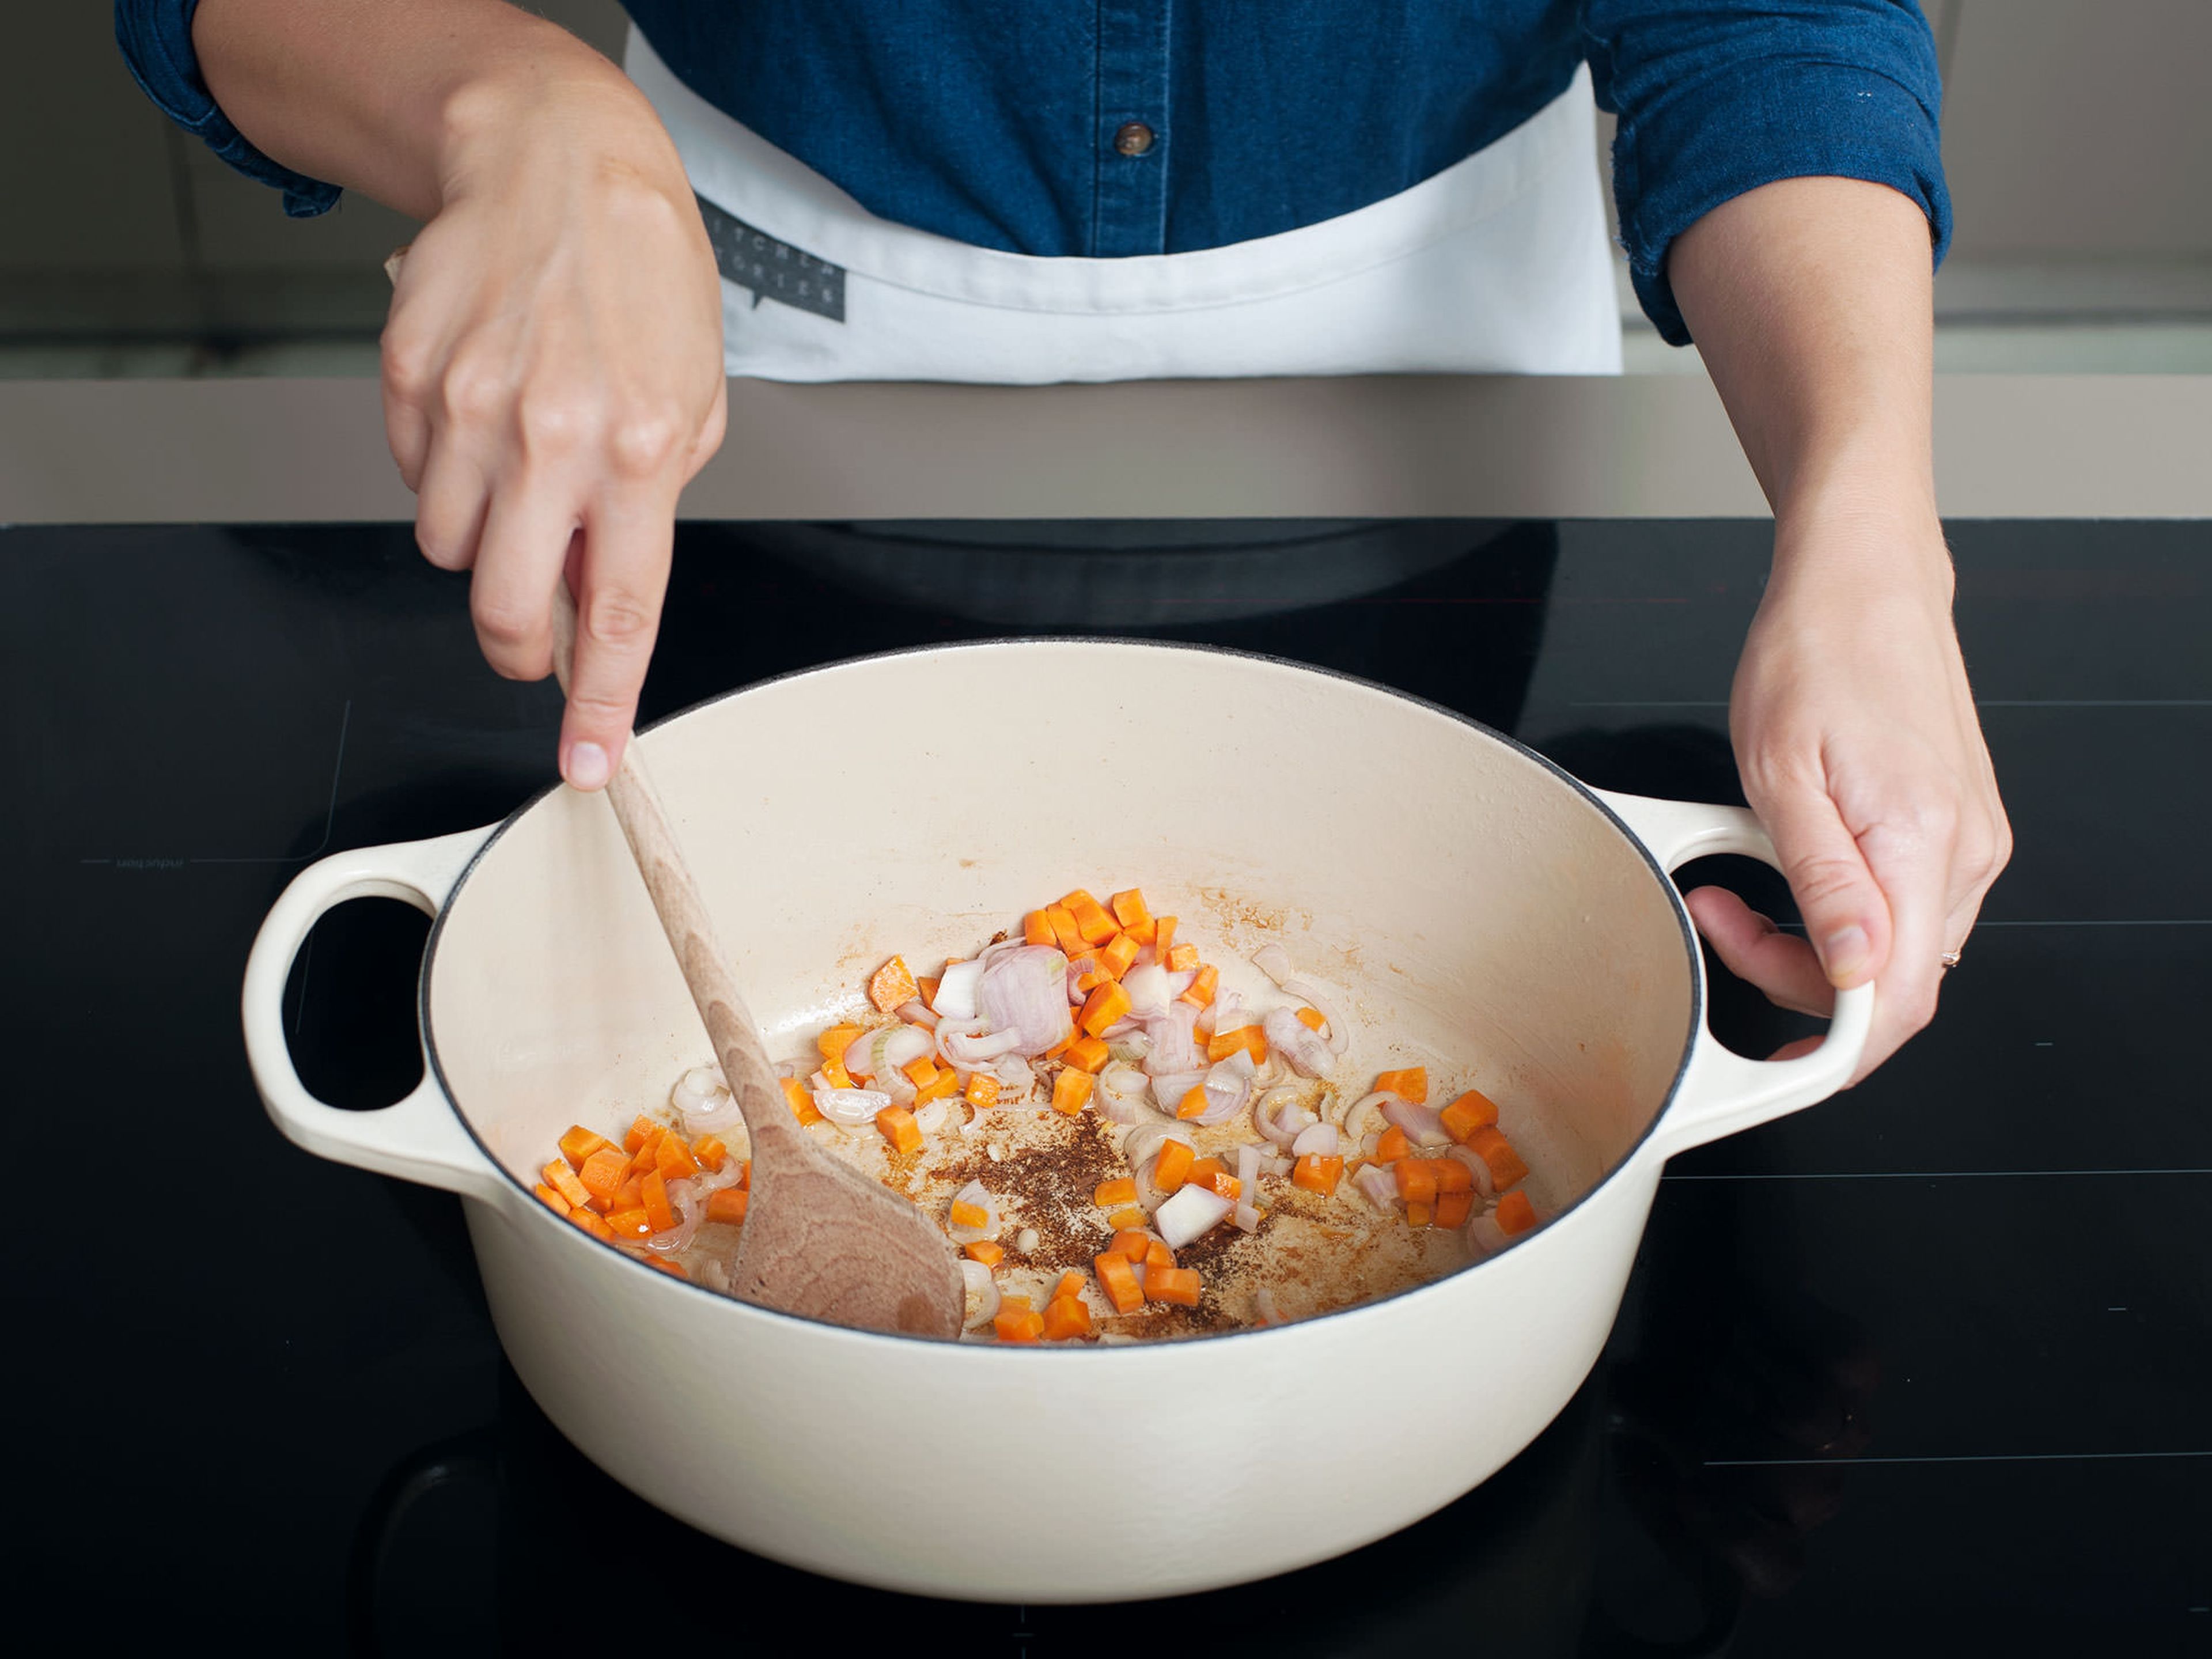 Ofen auf 150°C vorheizen. Vom ausgetretenen Fett fast alles entfernen und nur einen Rest zum Anbraten des Gemüse im Topf lassen. Anschließend Karotten, Knoblauch und Schalotten in den Topf geben. Bei mittlerer Hitze für 3 - 5 min. anschwitzen bis das Gemüse weich wird und anfängt zu duften.